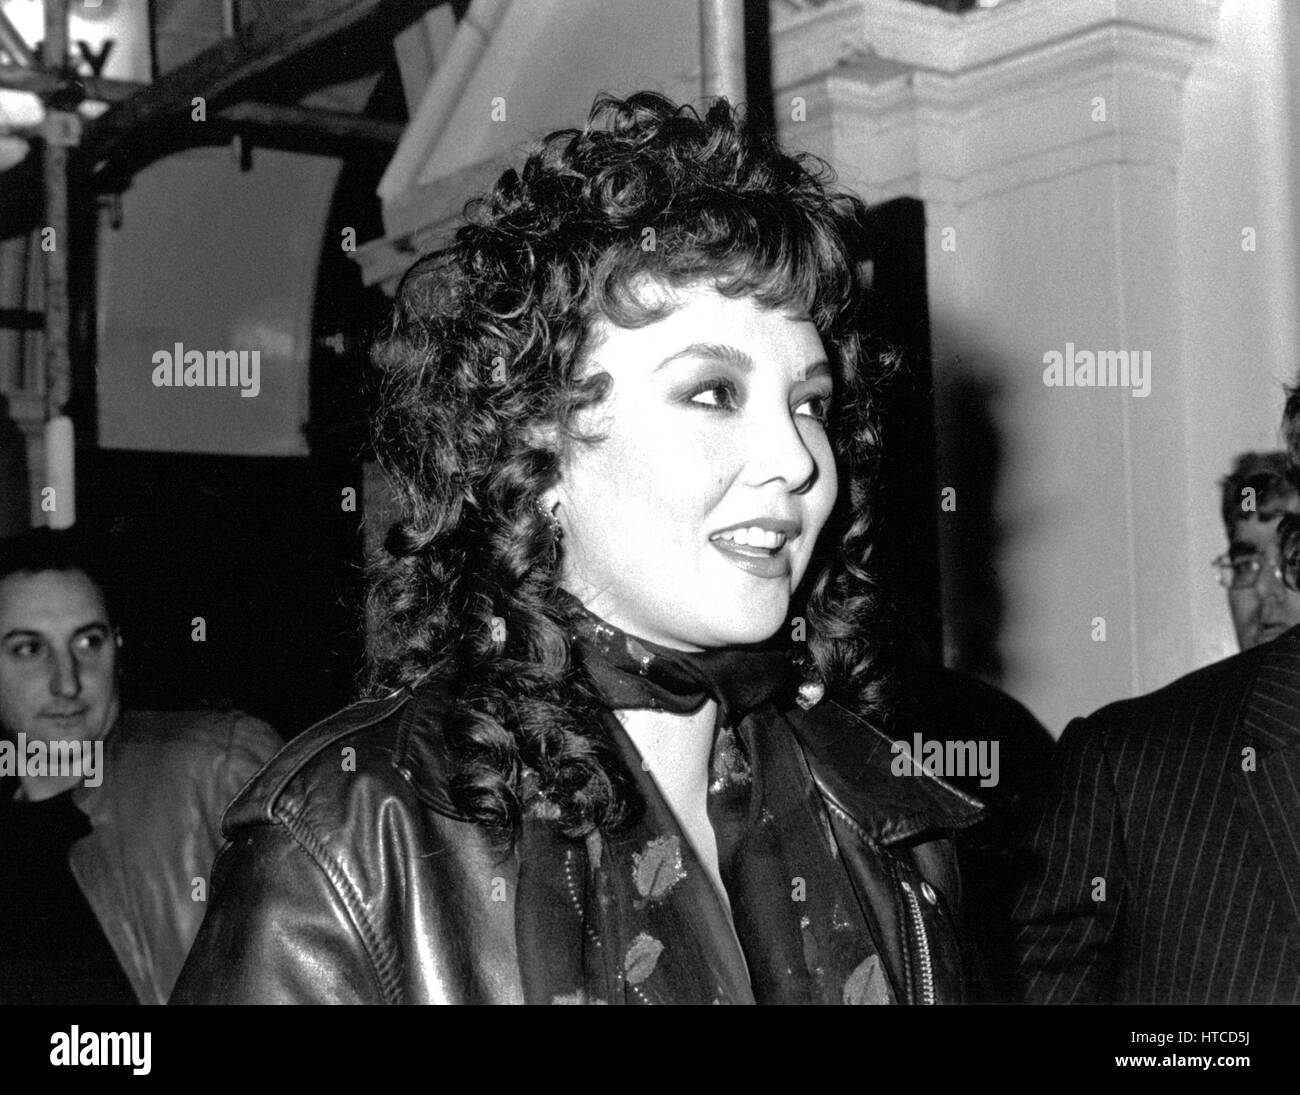 Marie Helvin, US-Model und Fernsehmoderatorin, besucht ein Promi-Event in London, England am 27. Februar 1990. Sie war zuvor an Fotografen David Bailey verheiratet. Stockfoto